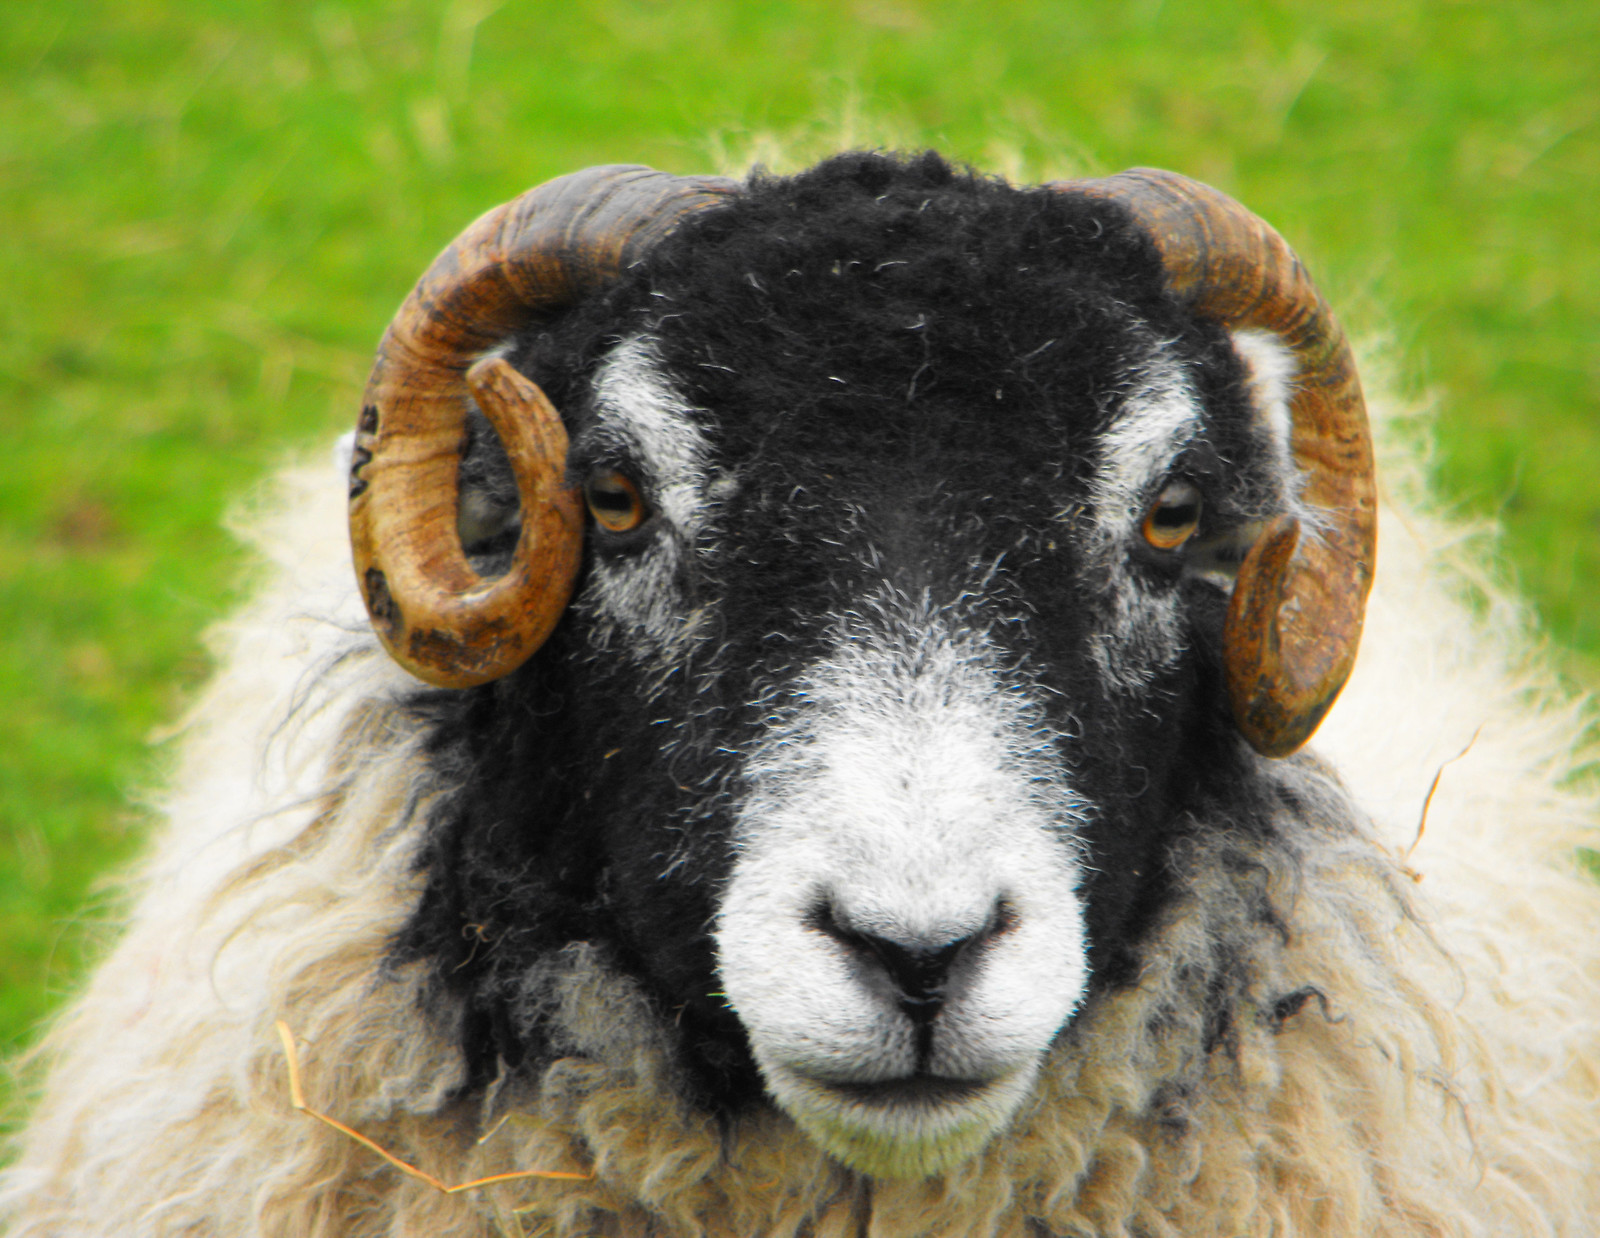 Swaldale Sheep. Credit Ambersky235